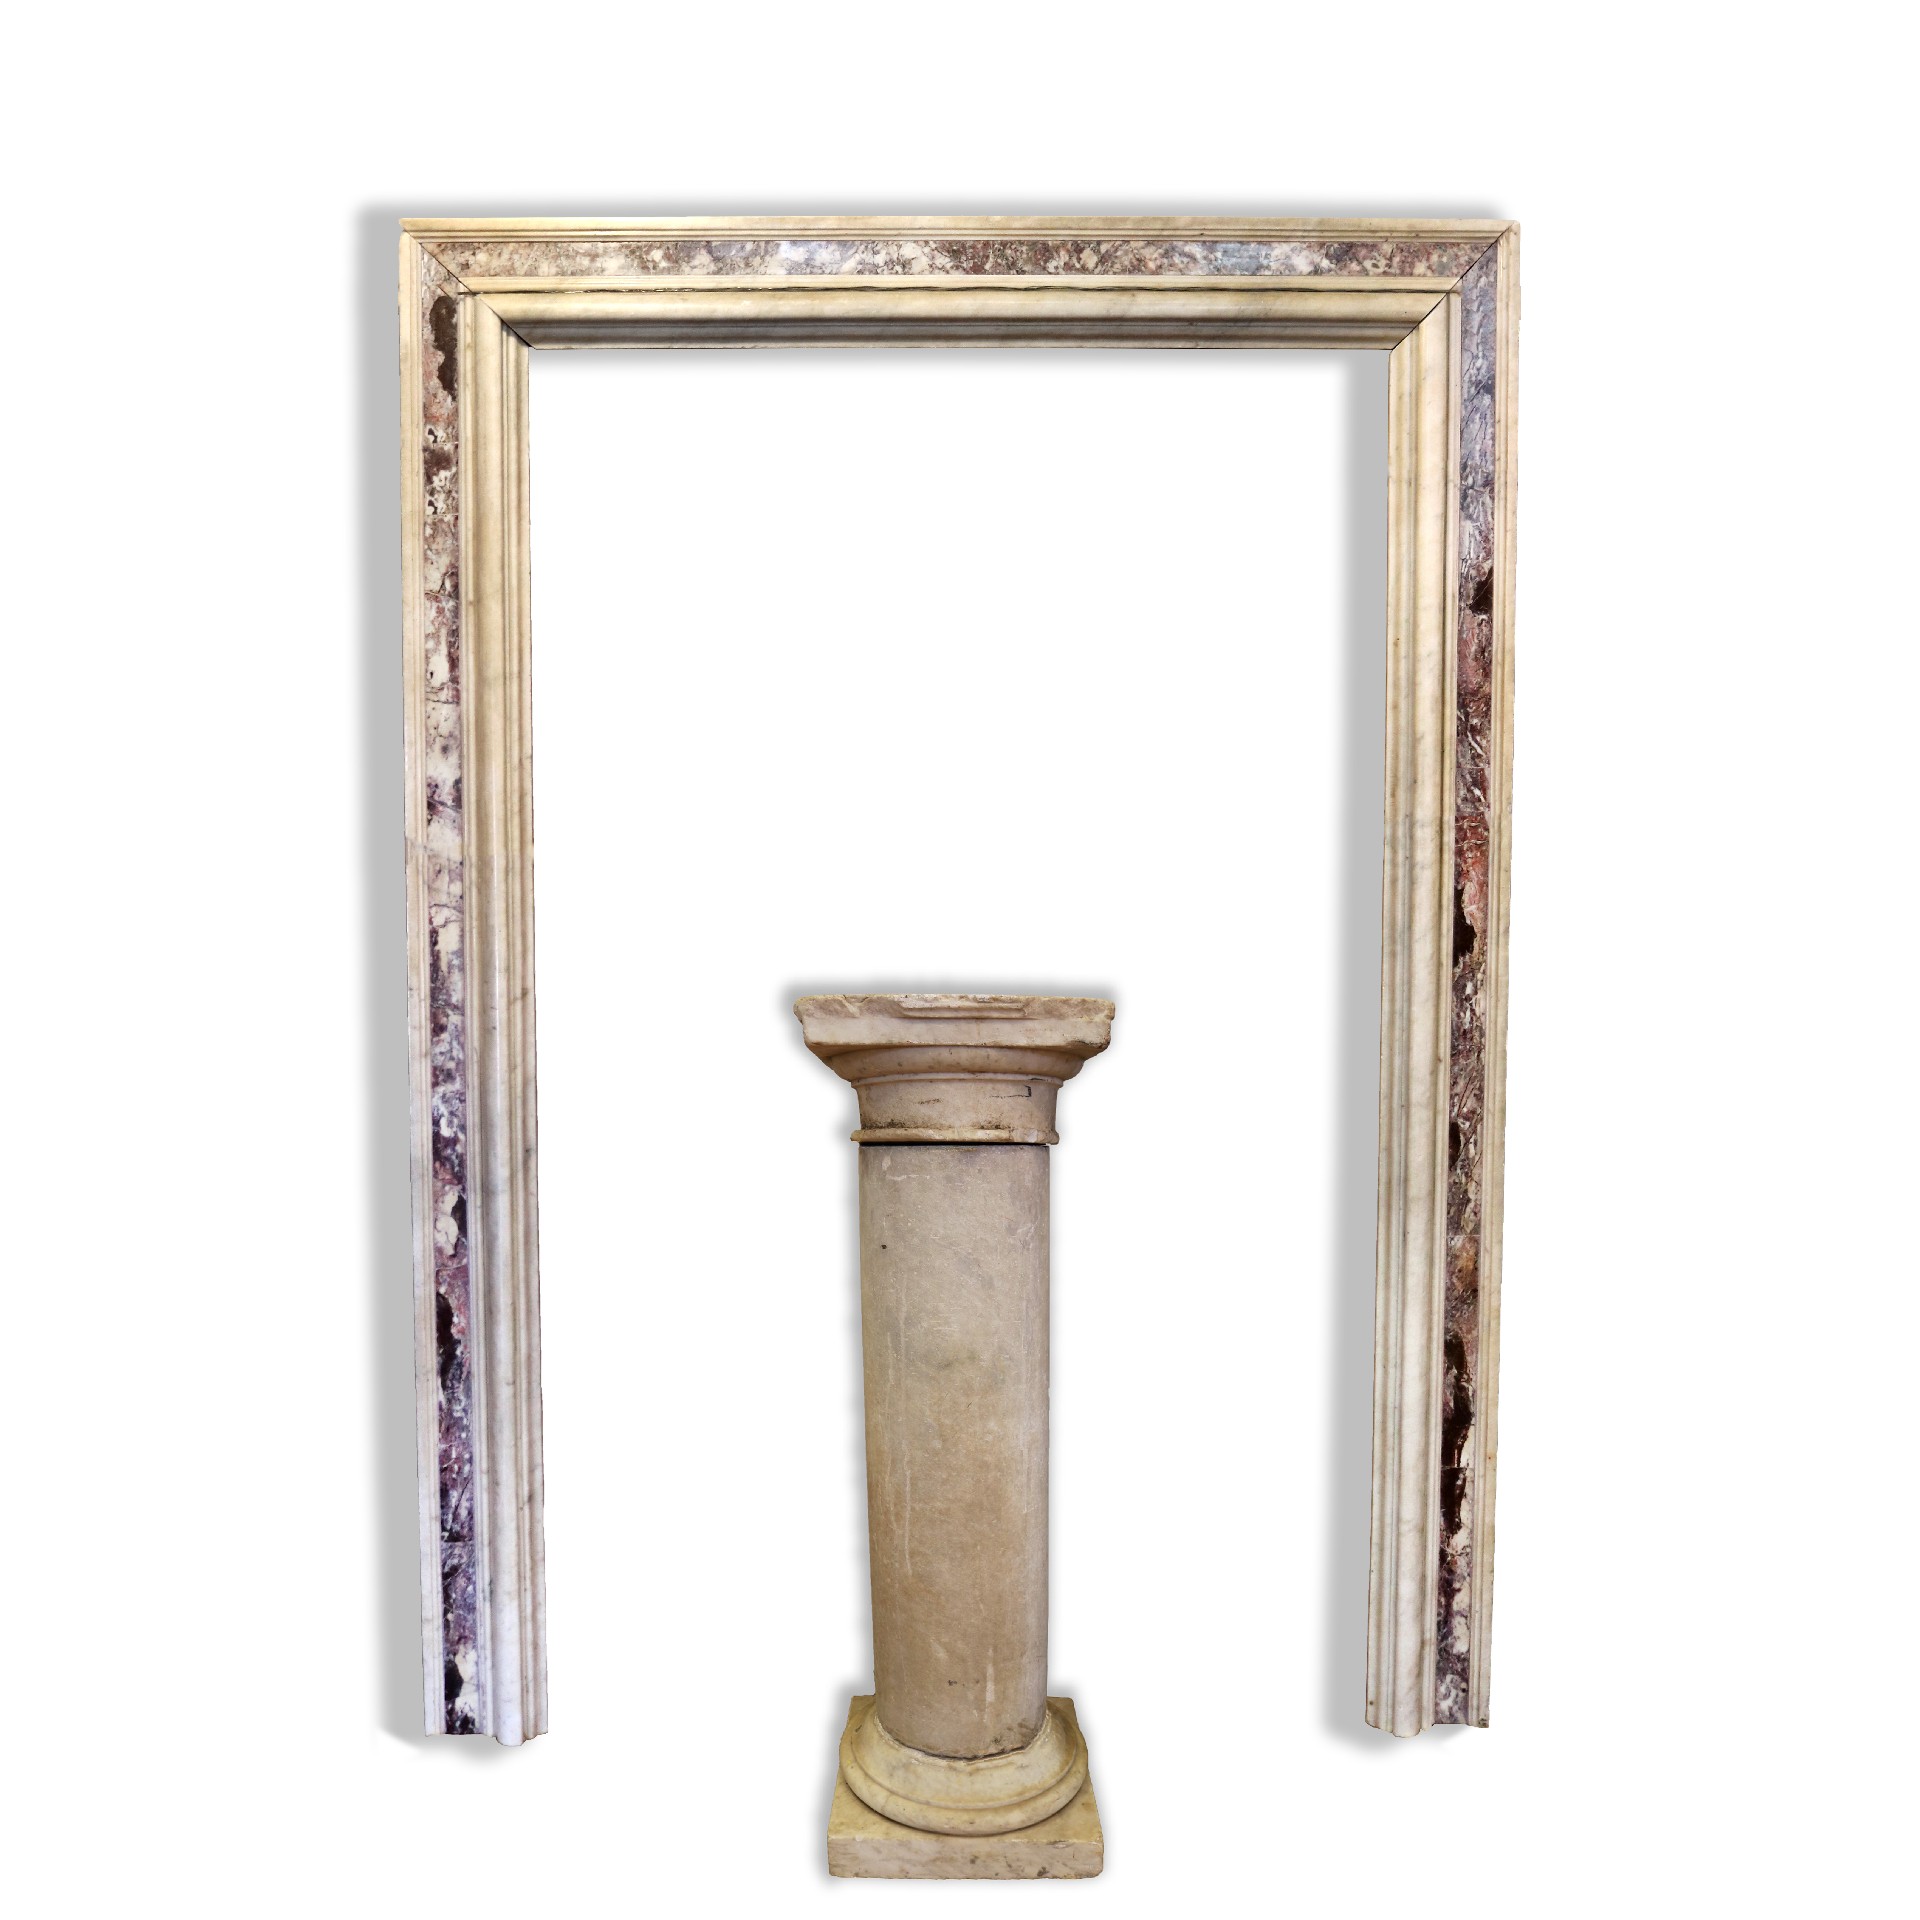 Antico portale in marmo - Portali, Finestre e Cornici - Architettura - Prodotti - Antichità Fiorillo